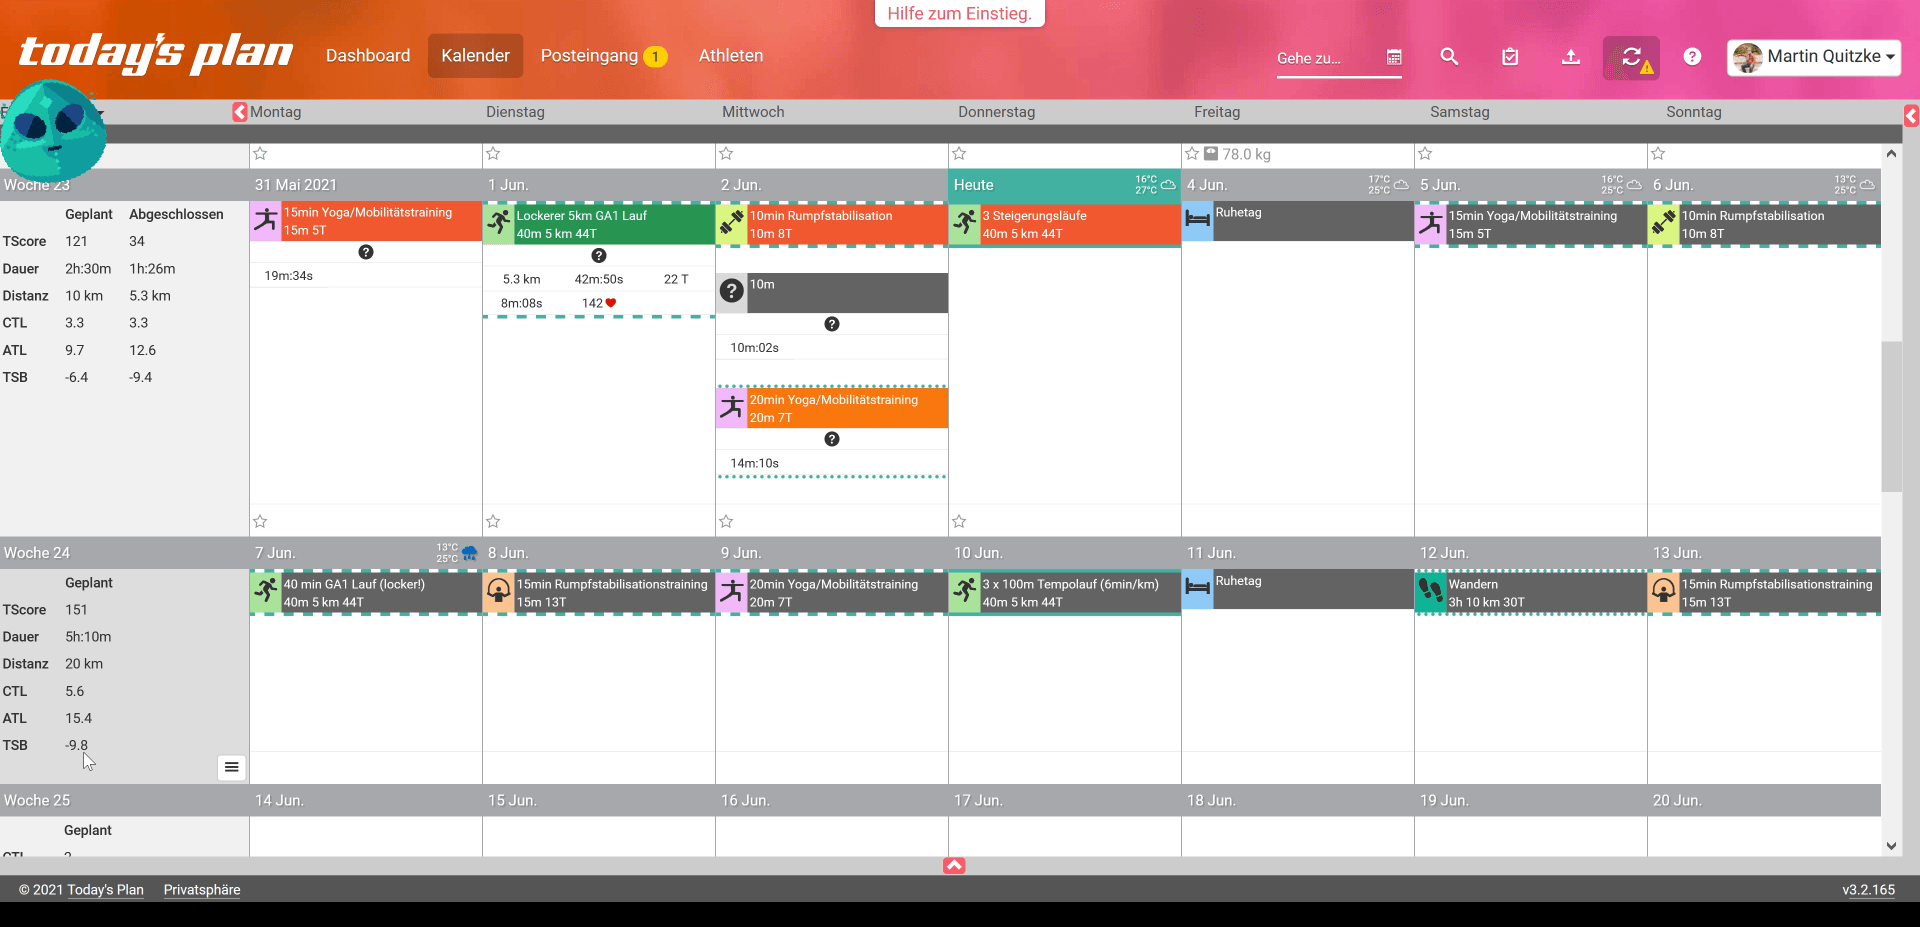 Today's Plan - Kalenderansicht mit geplanten und abgeschlossenen Einheiten